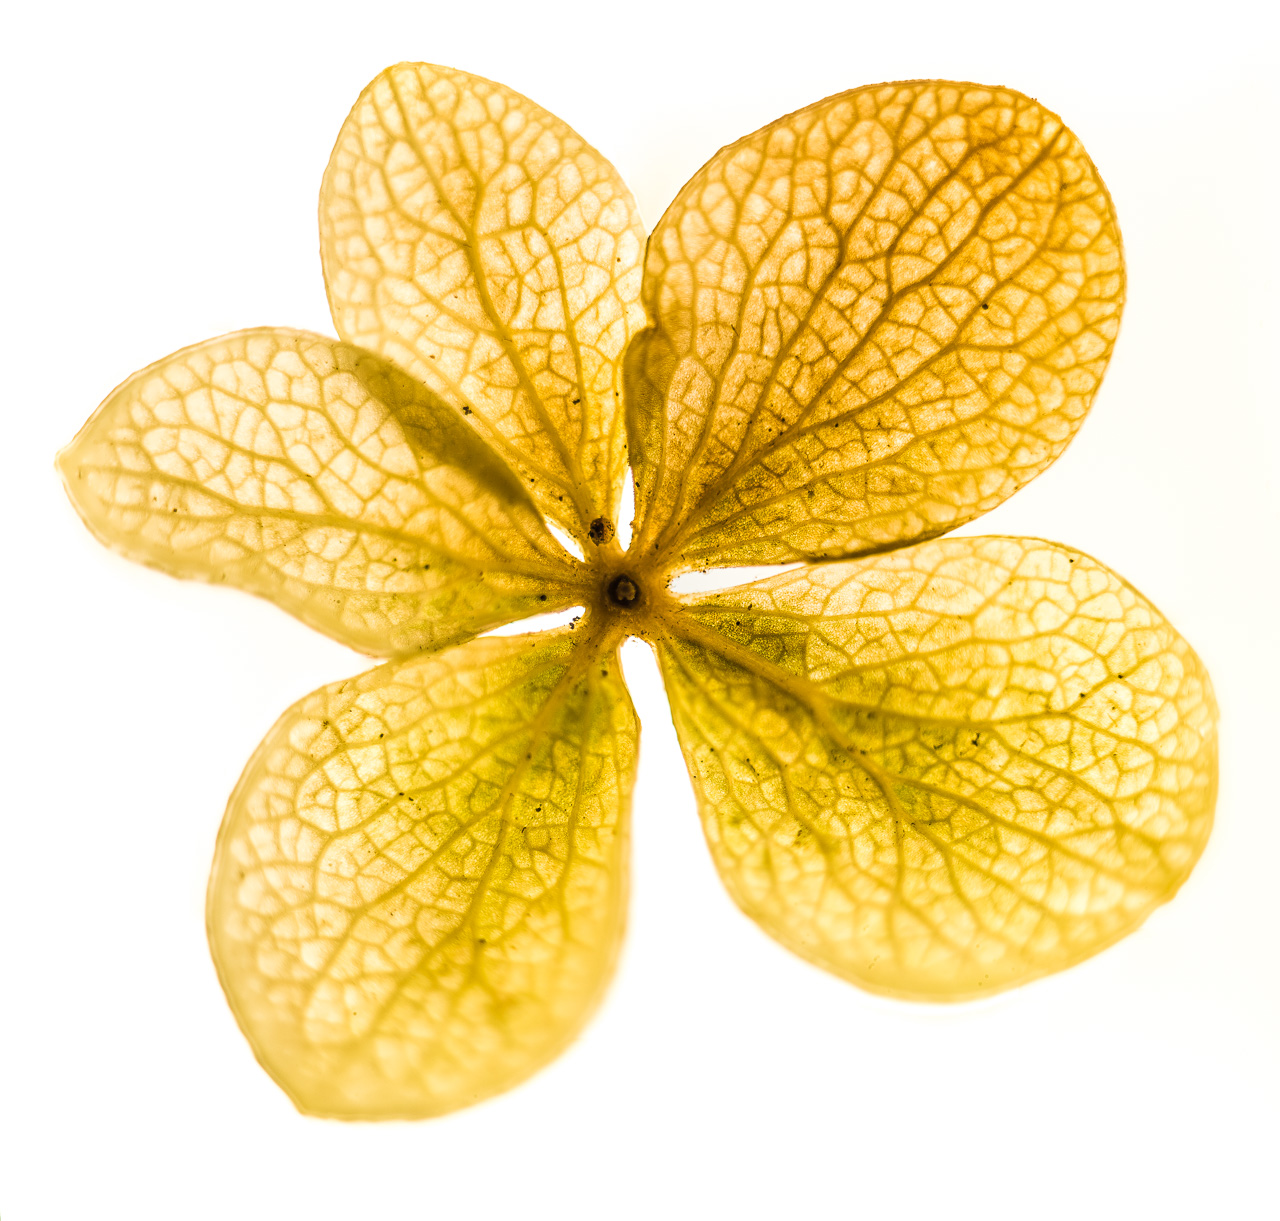 ScheinBlüte einer Hortensie, gelb, in FrontalAnsicht. Sie liegt auf strahlend weißem Grund und die Ränder werden etwas überStrahlt